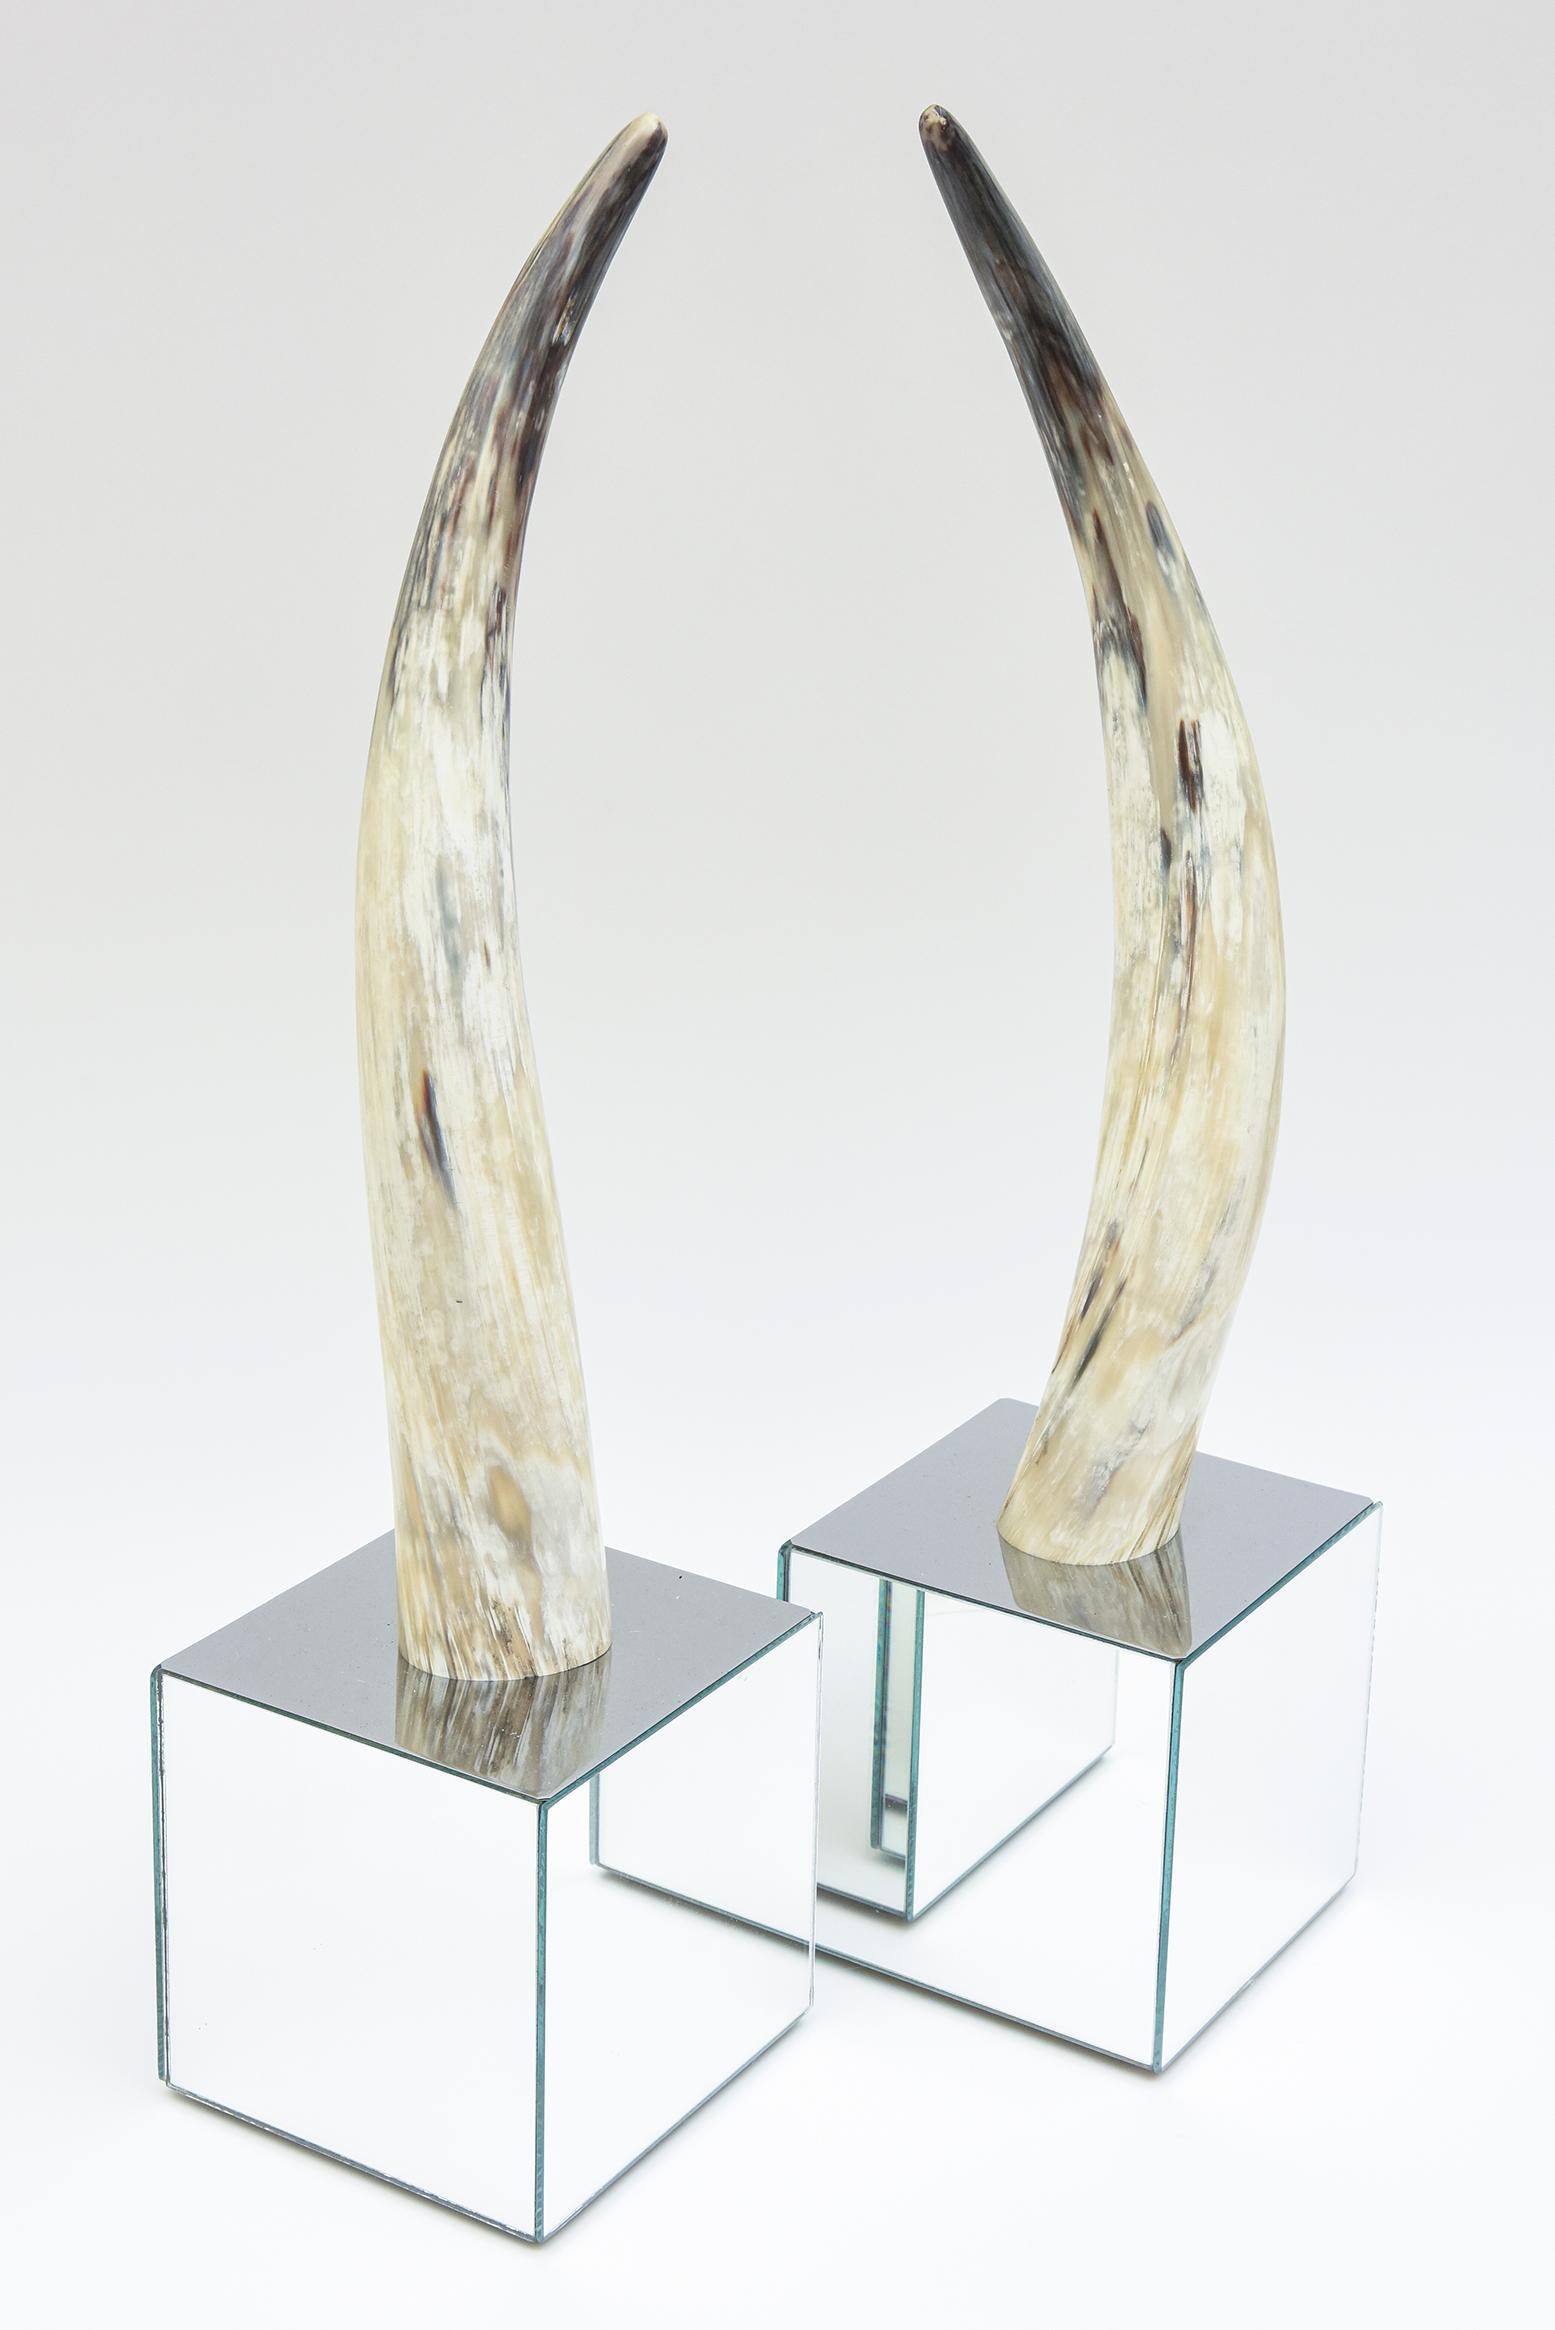 Dieses schöne Paar geschwungener Würfelskulpturen aus Horn und Spiegelsockel stammt aus den 80er Jahren. Die Farbabstufungen des Horns reichen von hellbraun über gebrochenes Weiß bis hin zu grau und schiefergrau usw. Die gespiegelten Basen sind 6,5